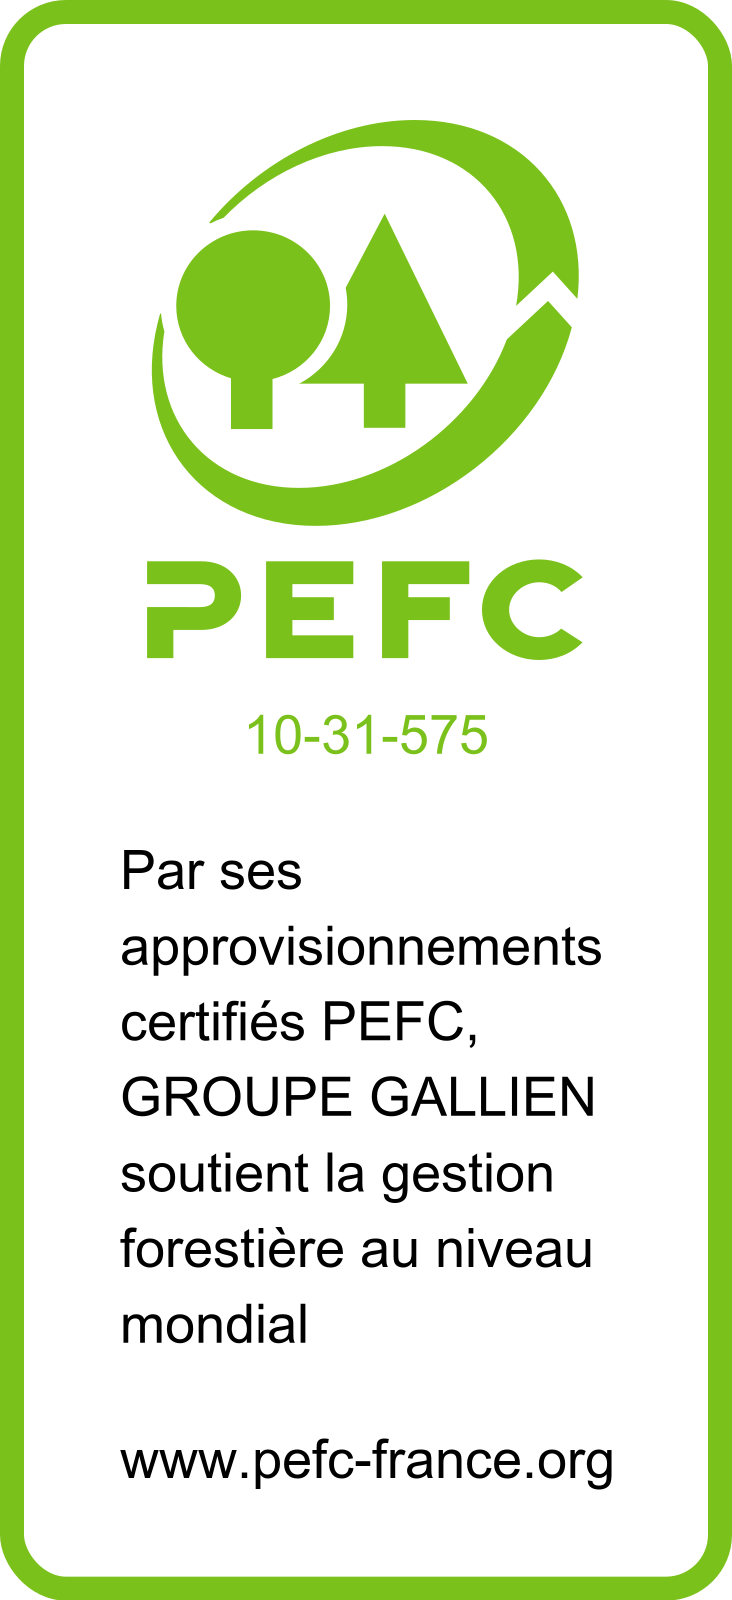 pefc label pefc10 31 575 logo pefc groupe gallien Poteaux France Telecom